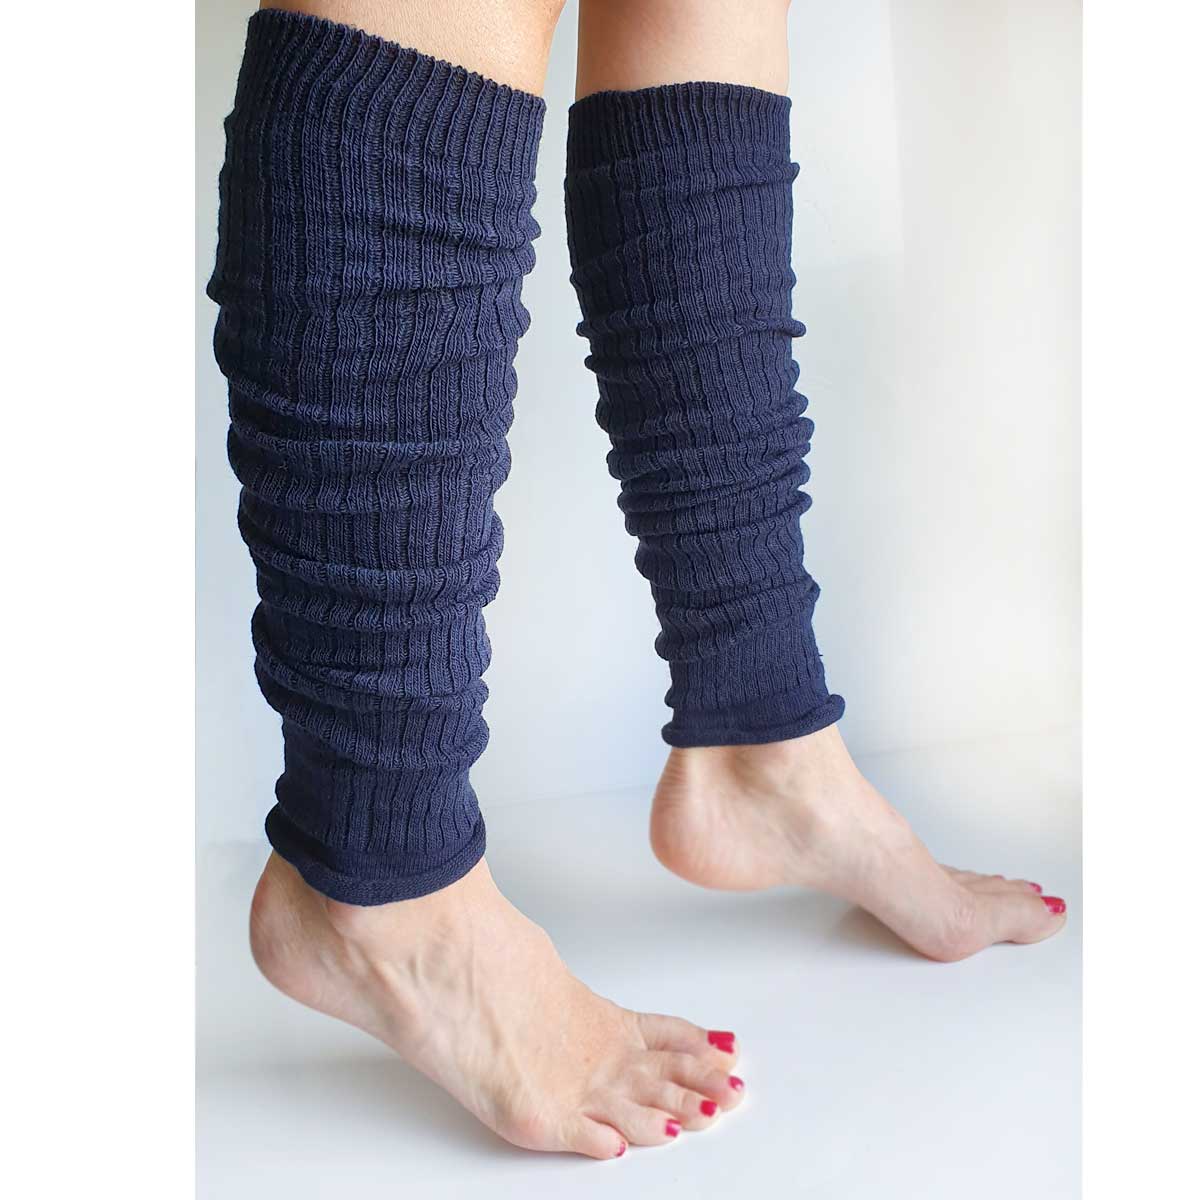 Navy blue leg warmers with wool - "Leggings" 